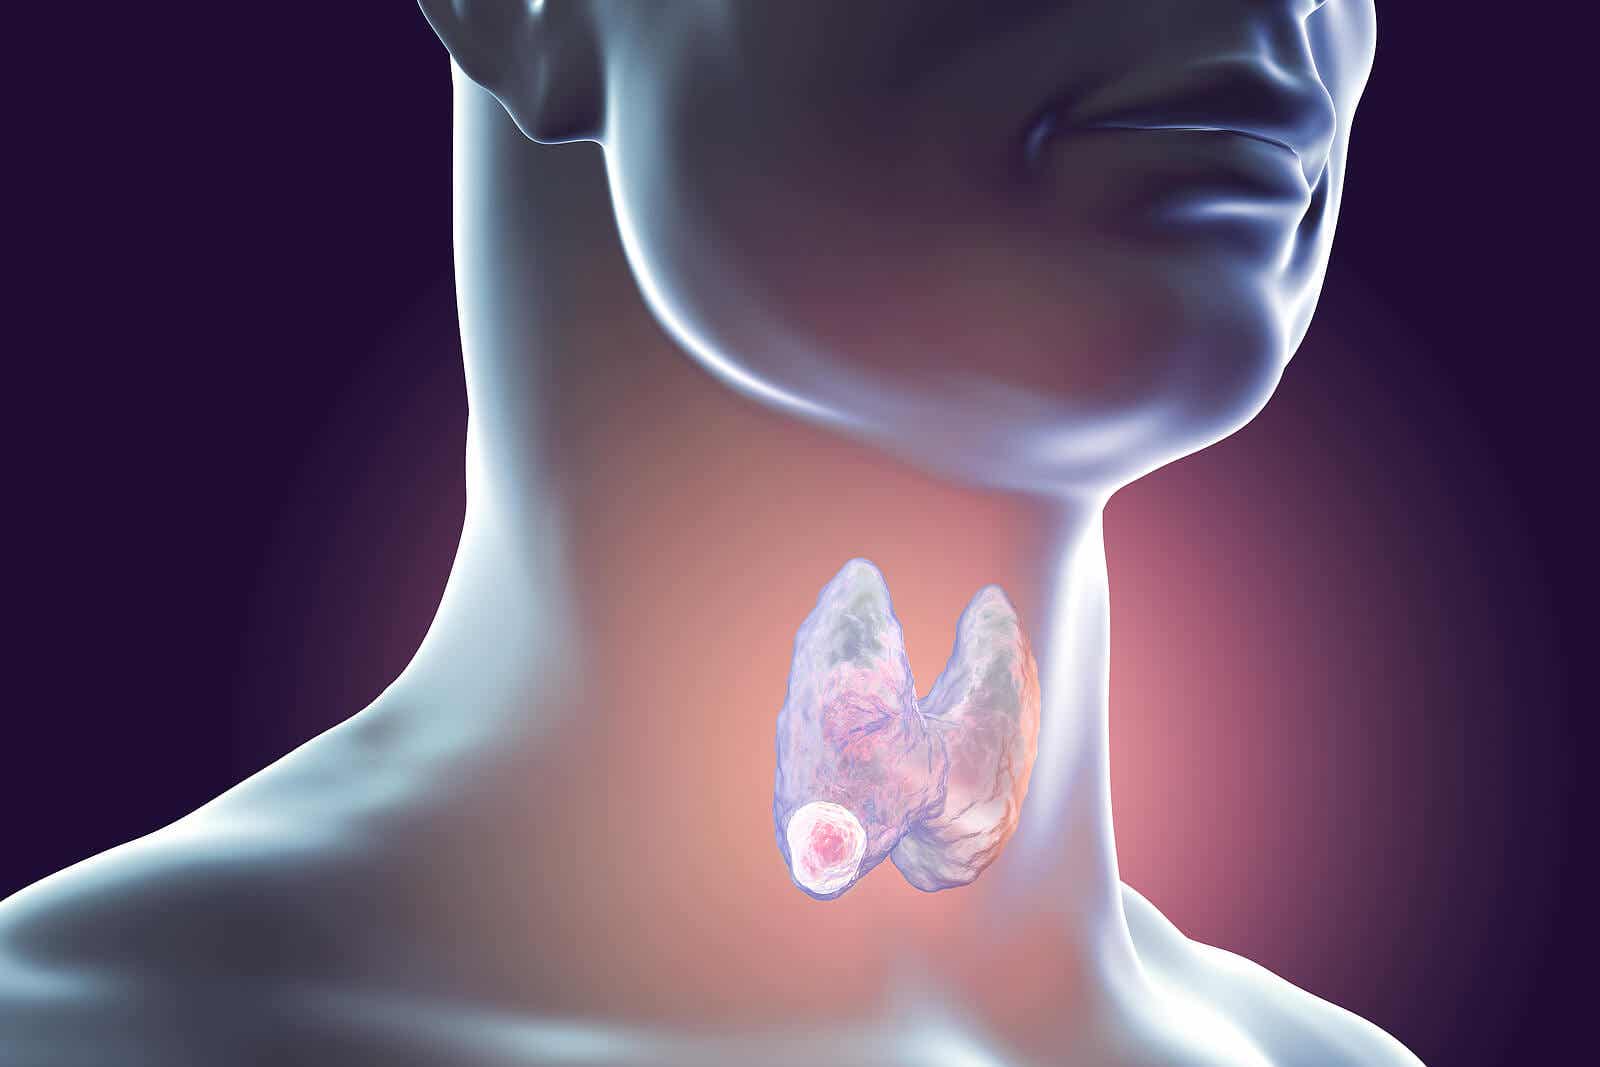 A digital illustration of a thyroid nodule.